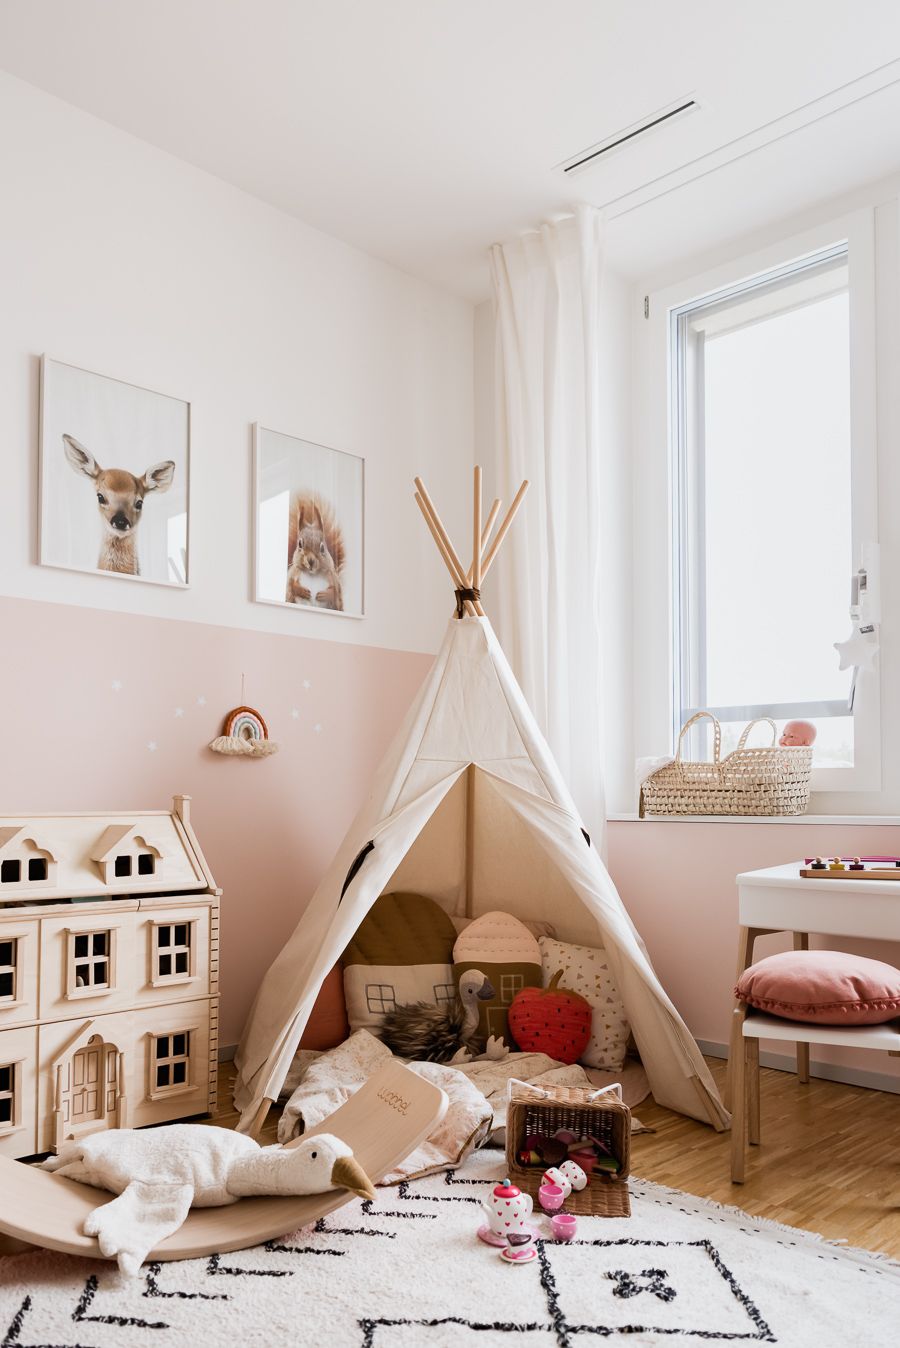 7 Tips para decorar habitaciones infantiles con poco espacio